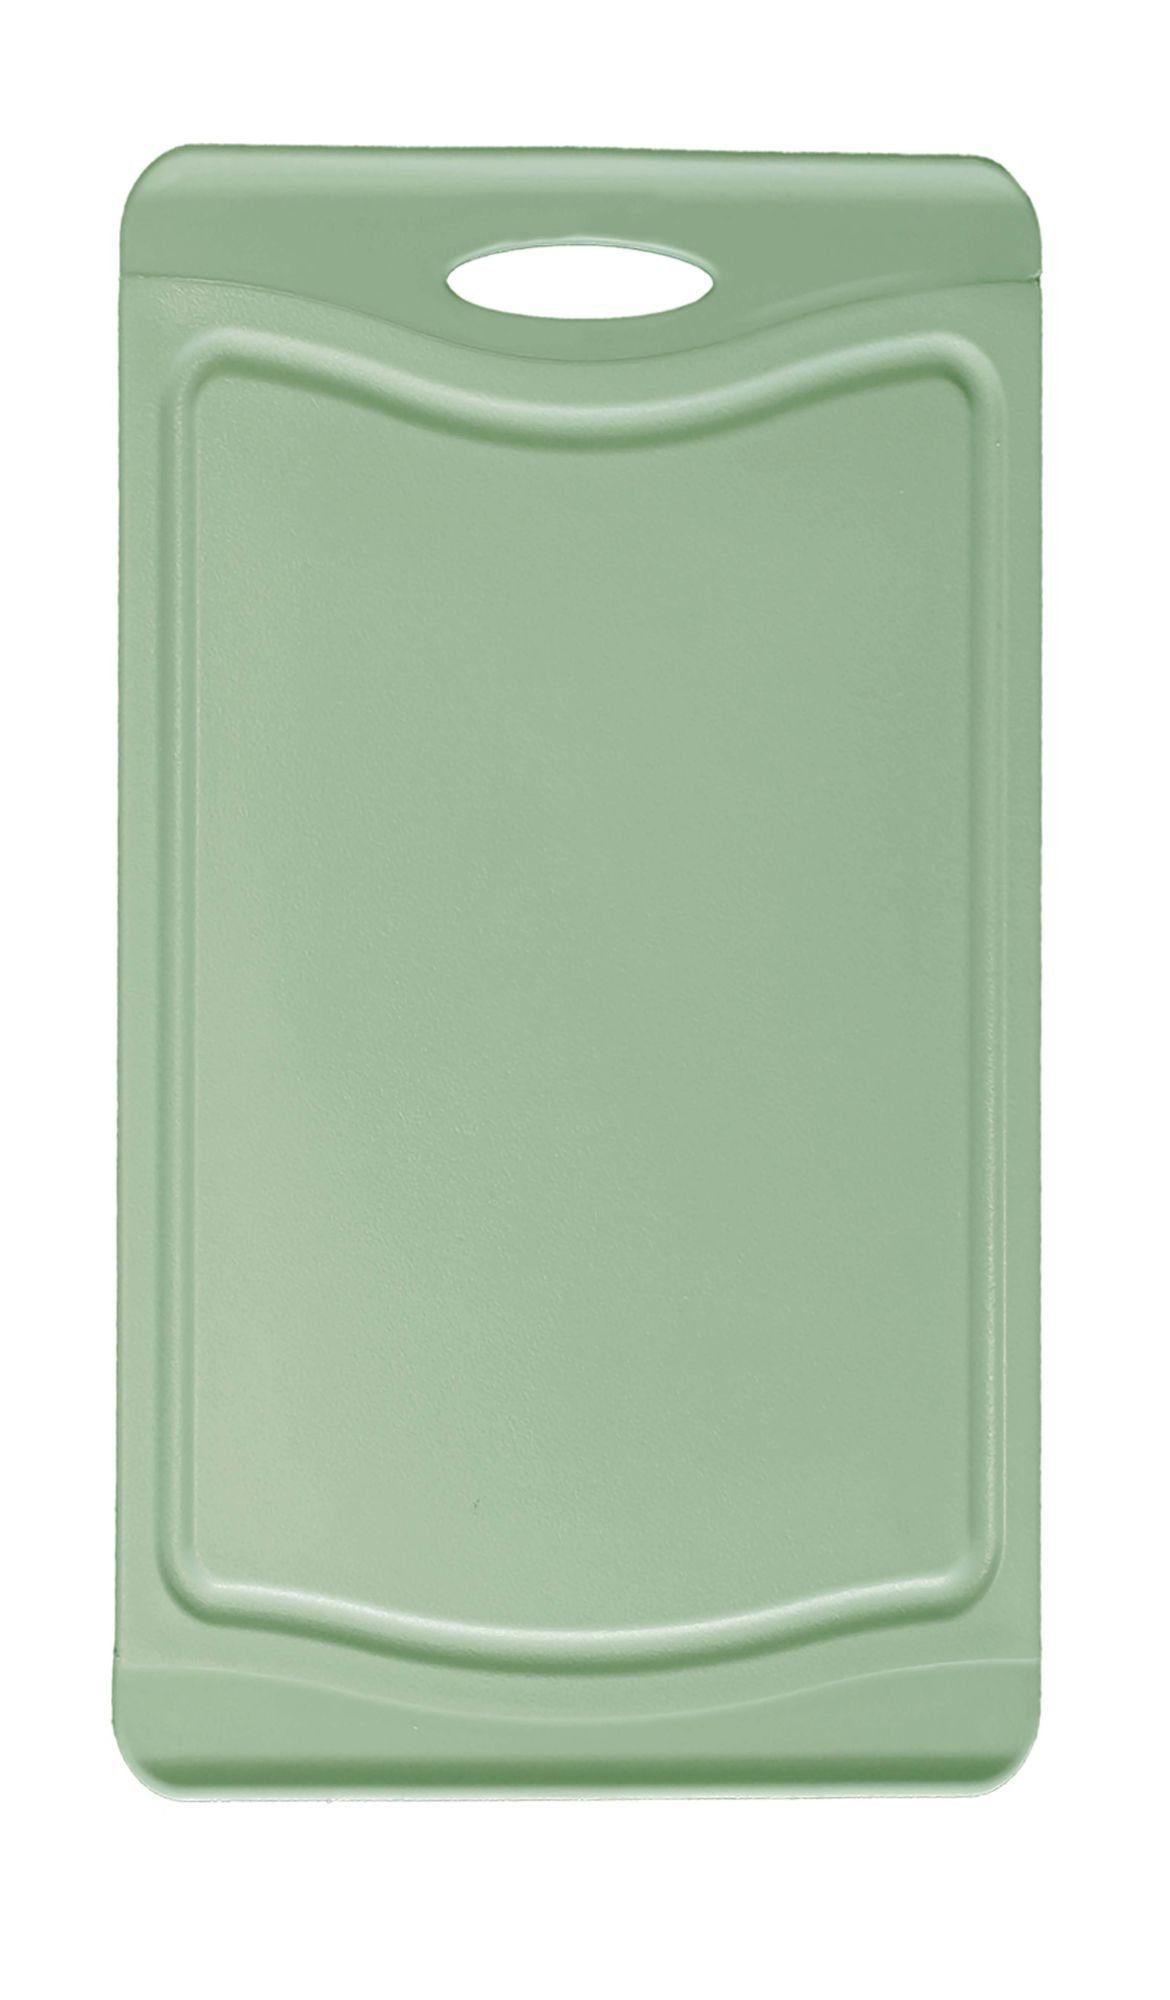 Pastell-grün mit messerschonend verwendbar, Saftrinne, beidseitig (1-St), Schneidebrett, Kunststoff, Steuber